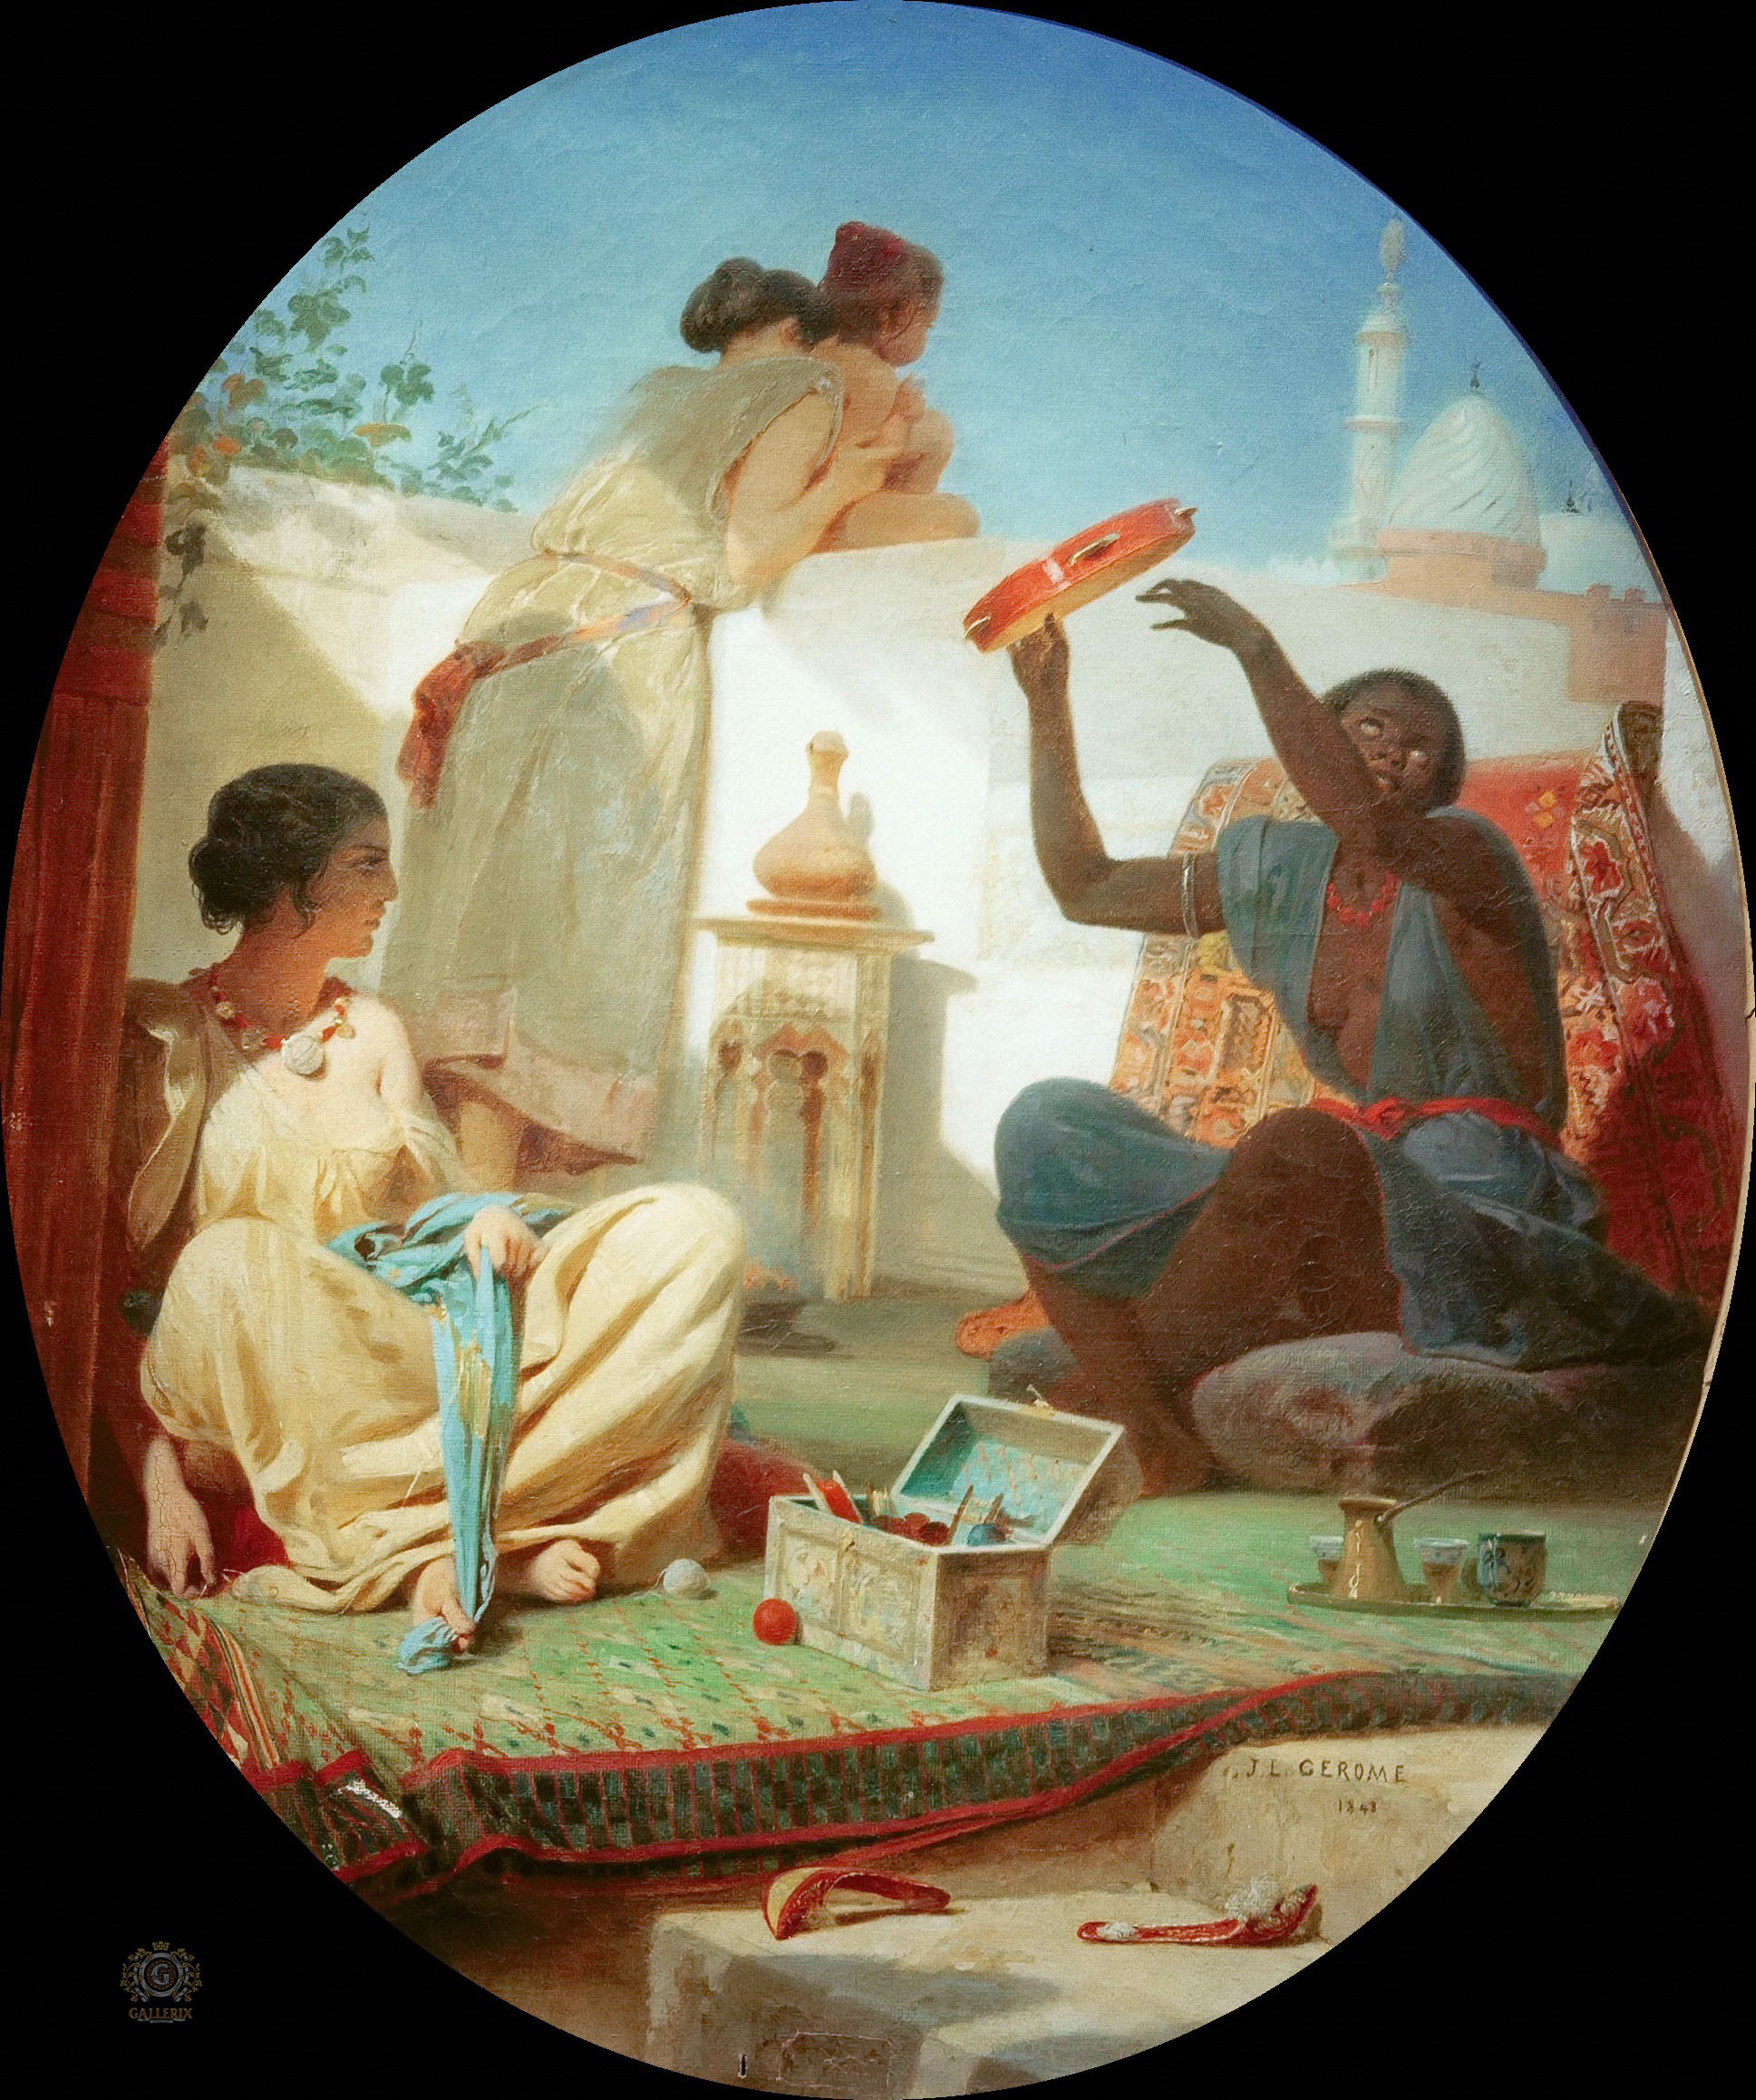 Жан-Леон Жером. "Средневосточные женщины на террасе". 1843. Музей Боссюэ, Мо.